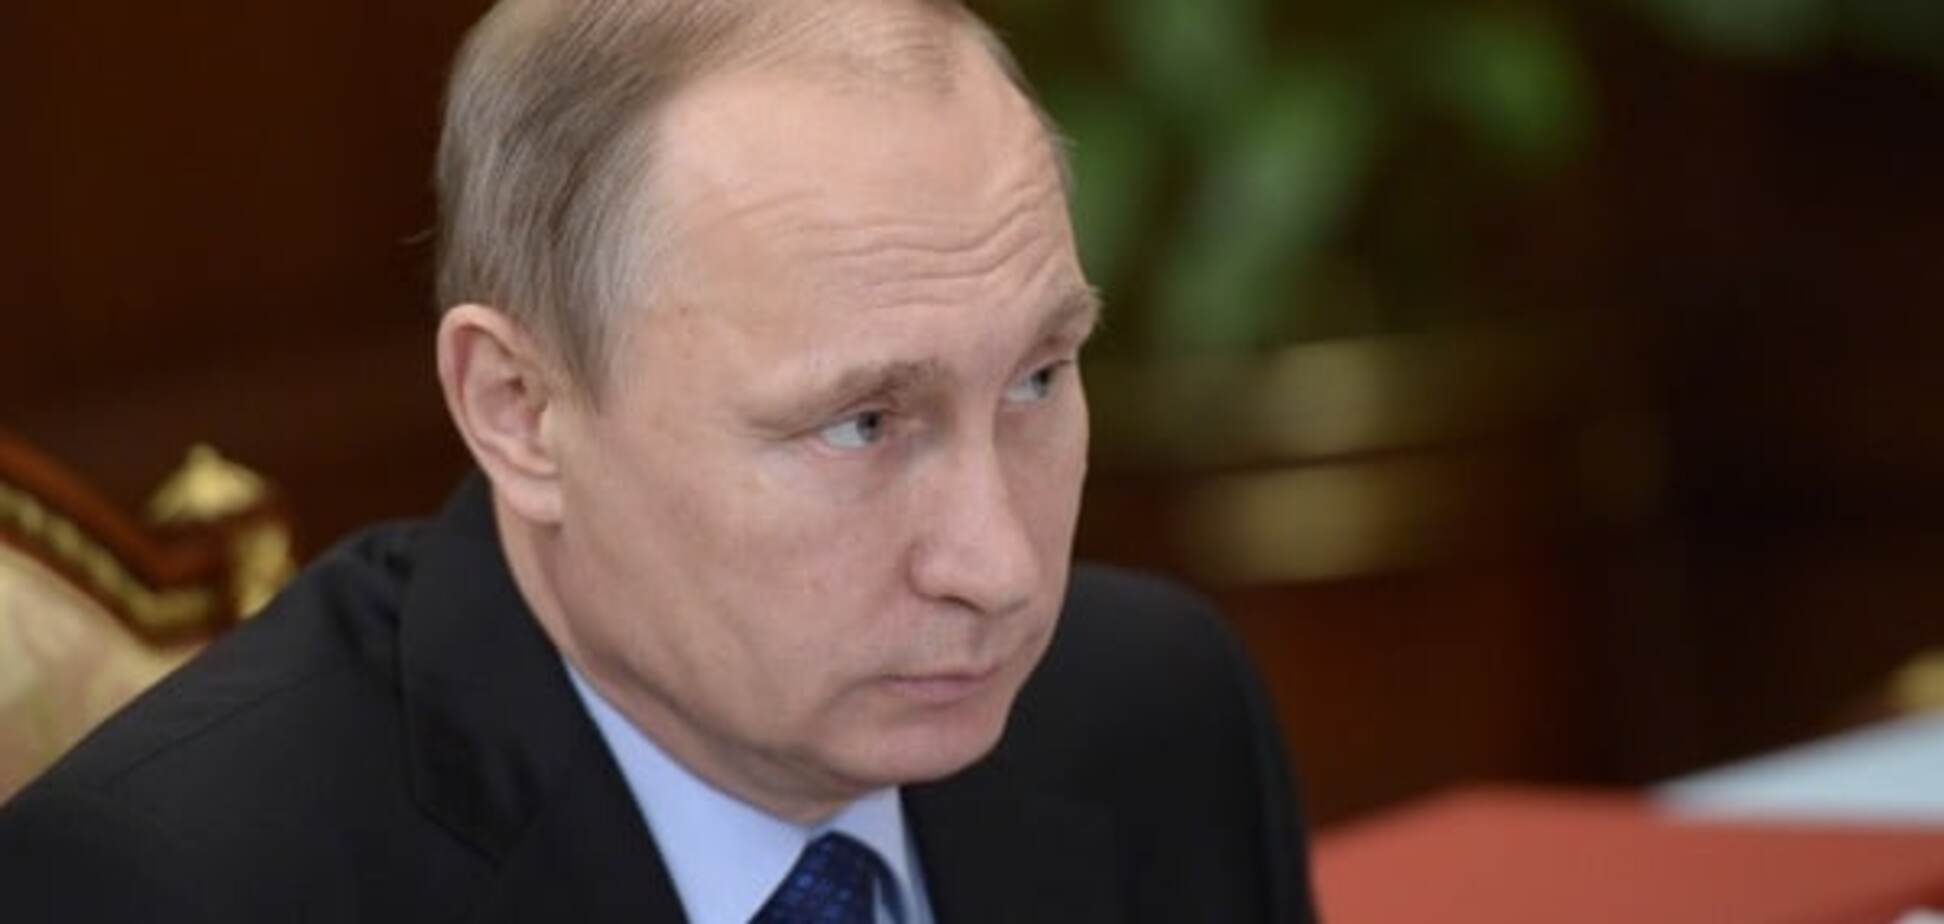 Злякався: Путін назвав Україну 'осередком нестабільності'